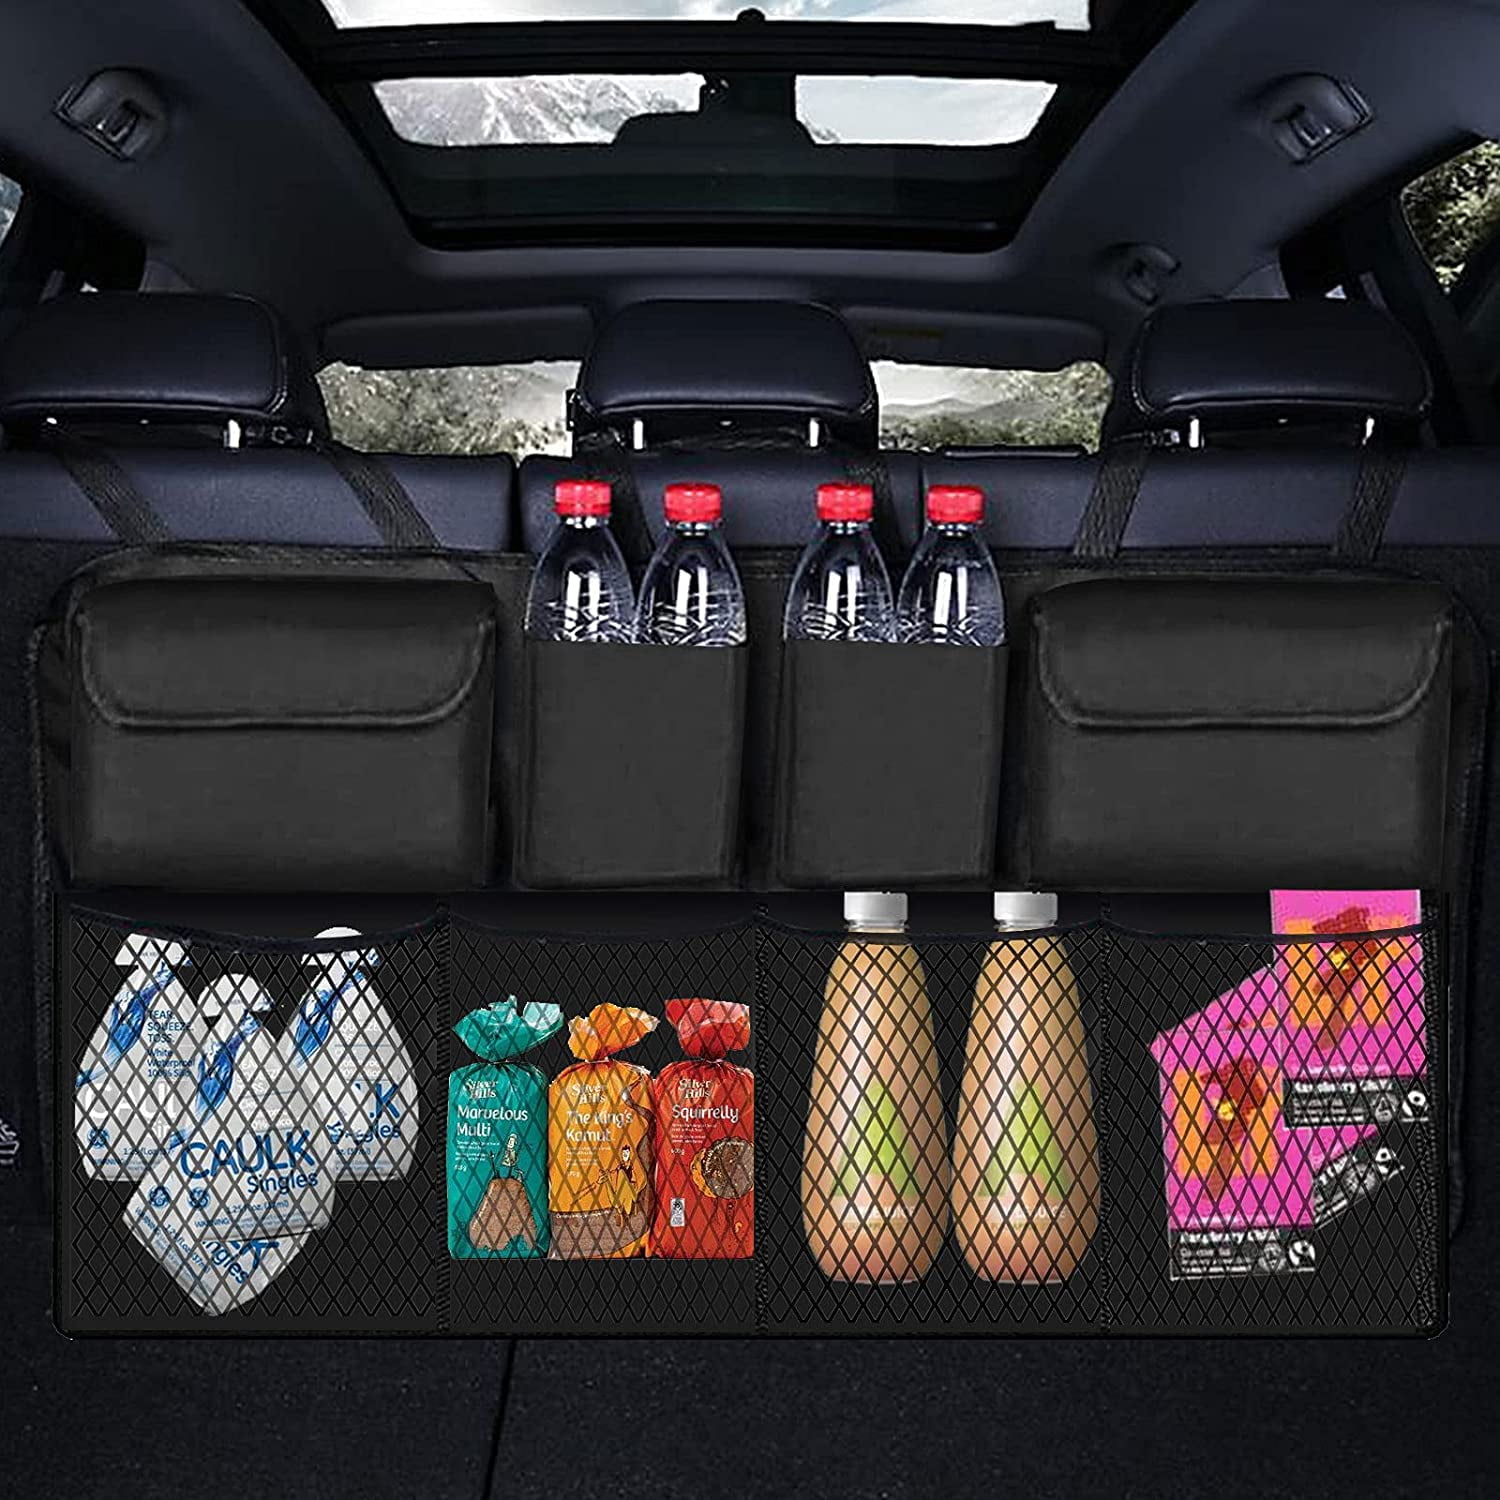 Car Storage Travel Bag Soft Woolen Felt Car Trunk Organizer Car Storage Bag  Folding Storage Bag